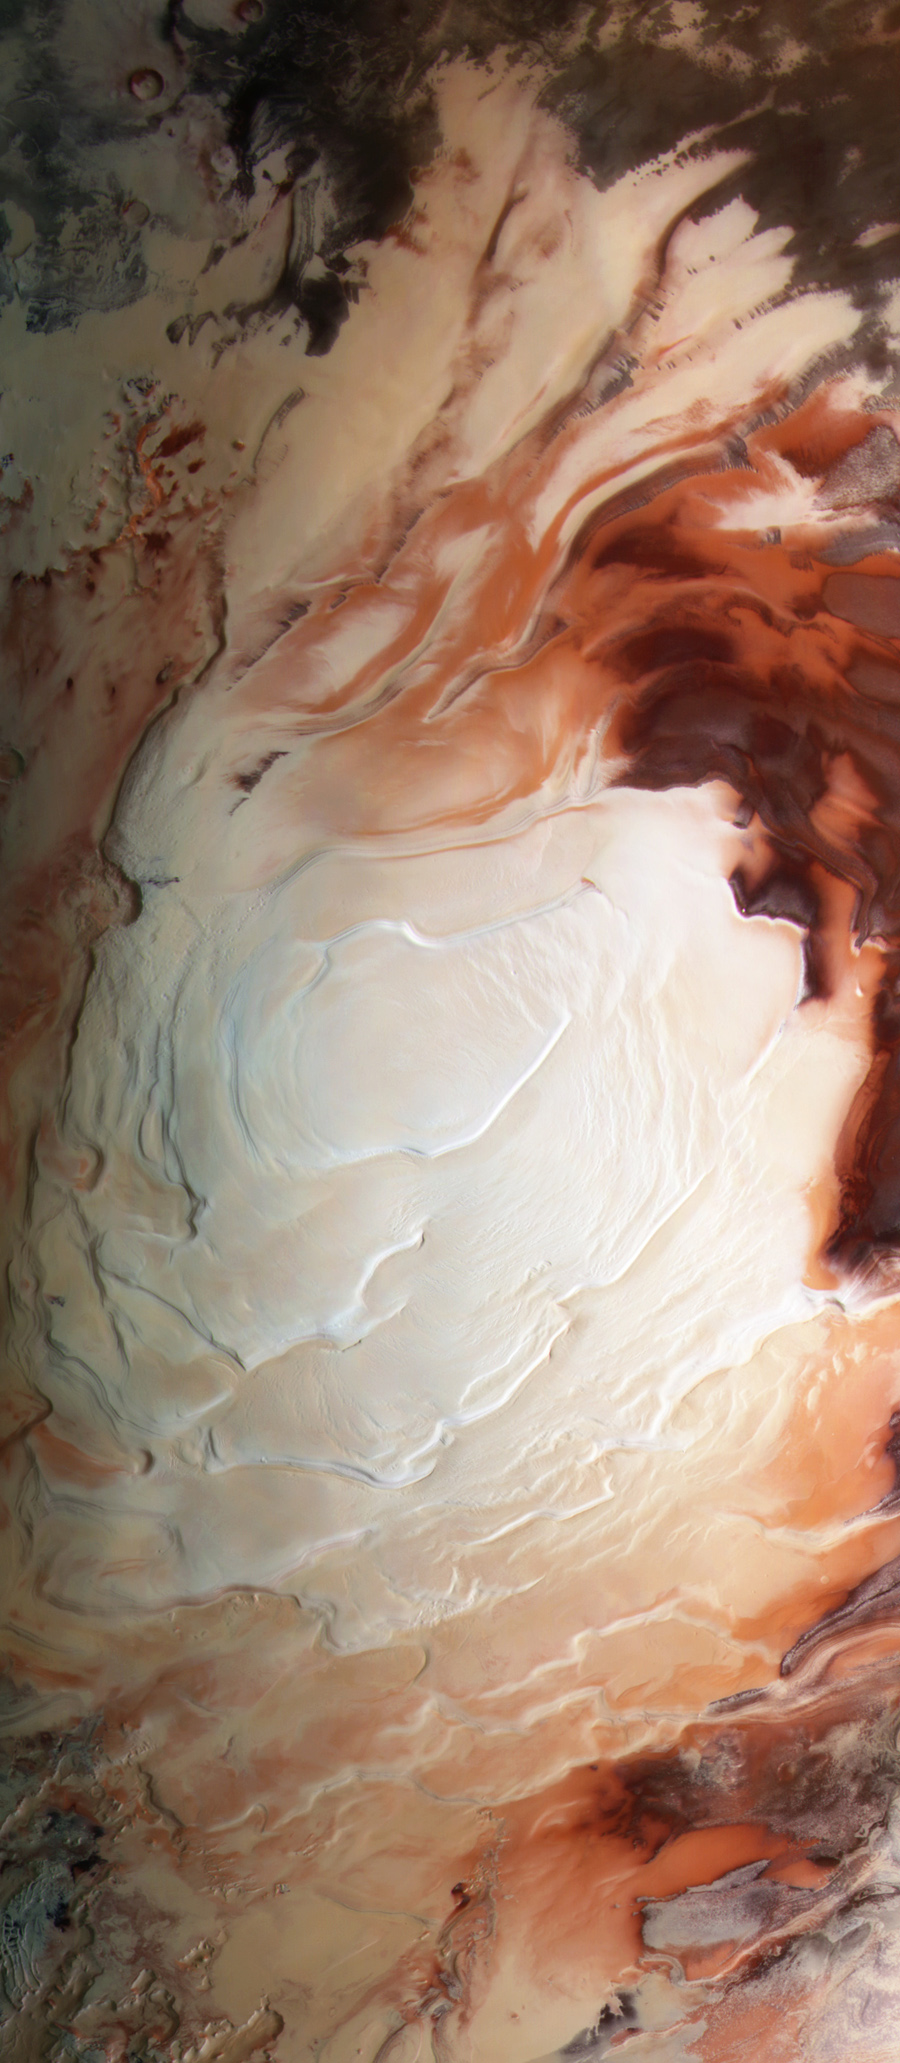 снимок южного полюса Марса космическим аппаратом Mars Express Европейского космического агенства